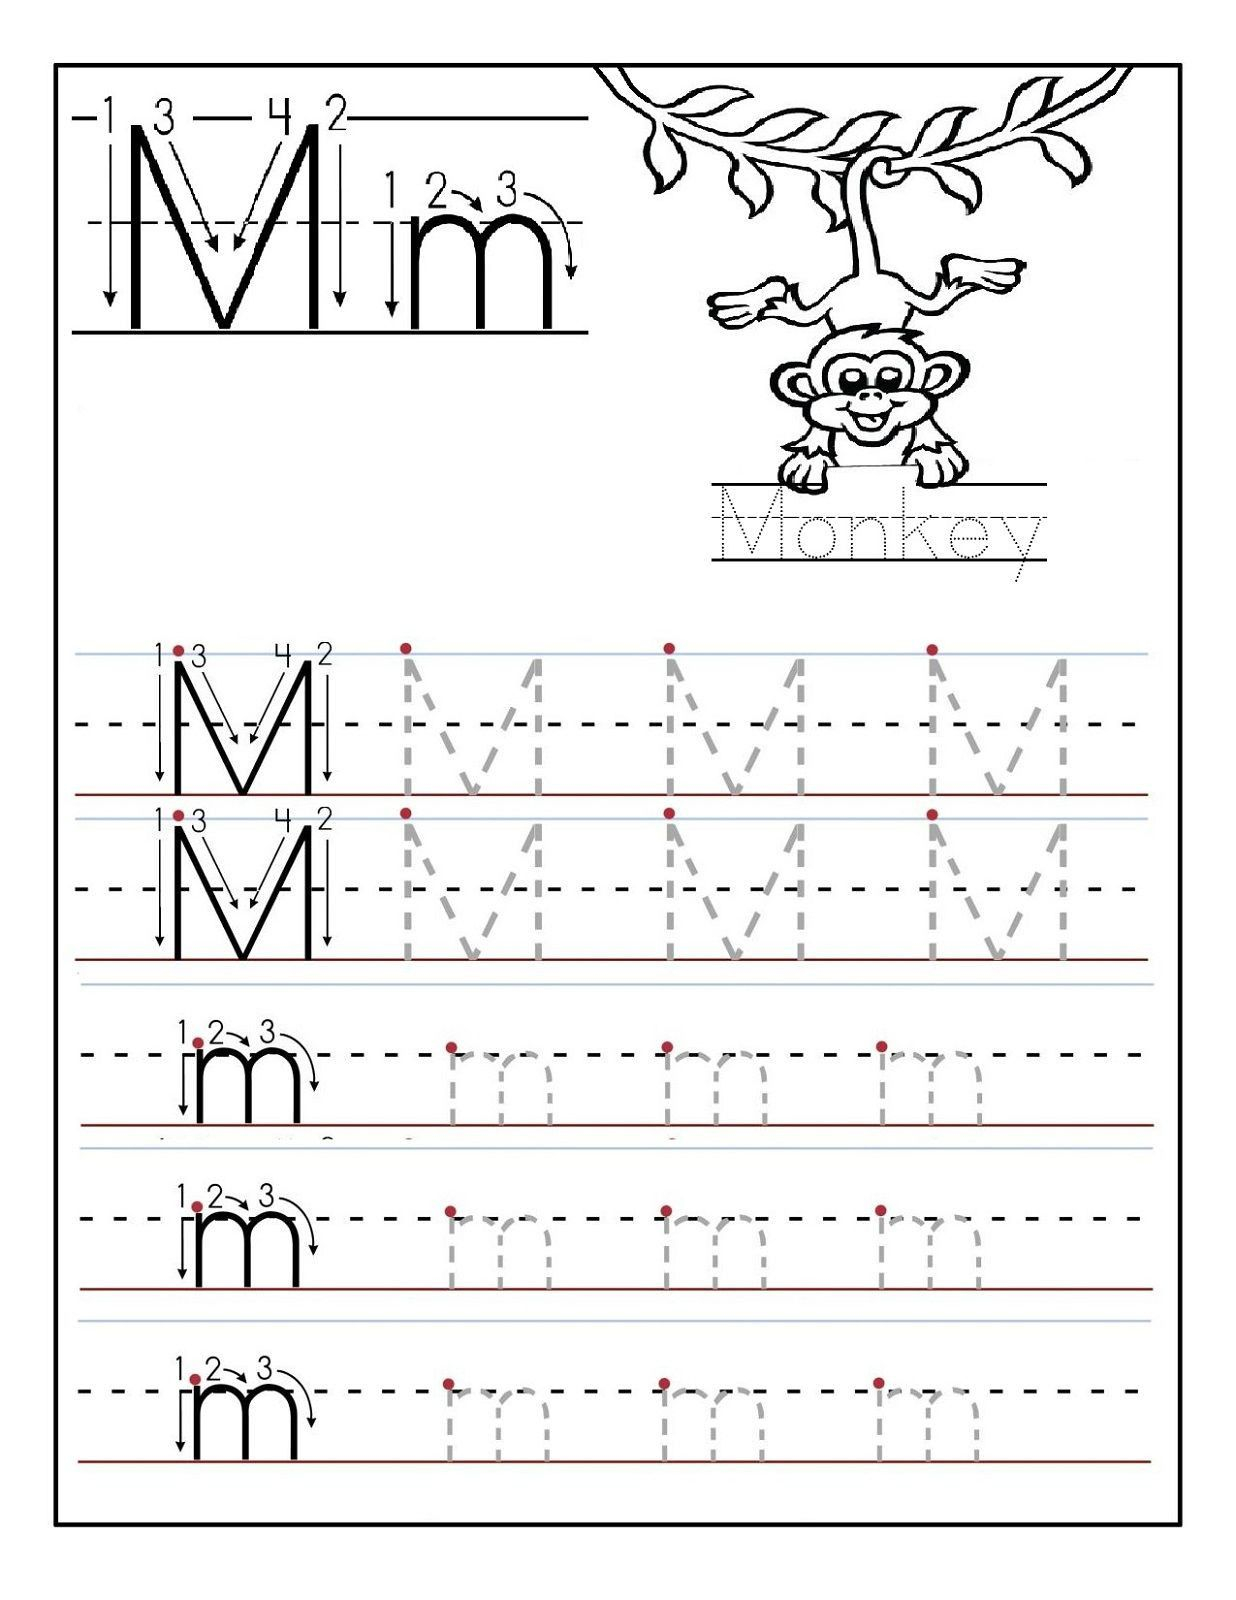 2 Preschool Letter N Tracing Worksheets In 2020 | Printable